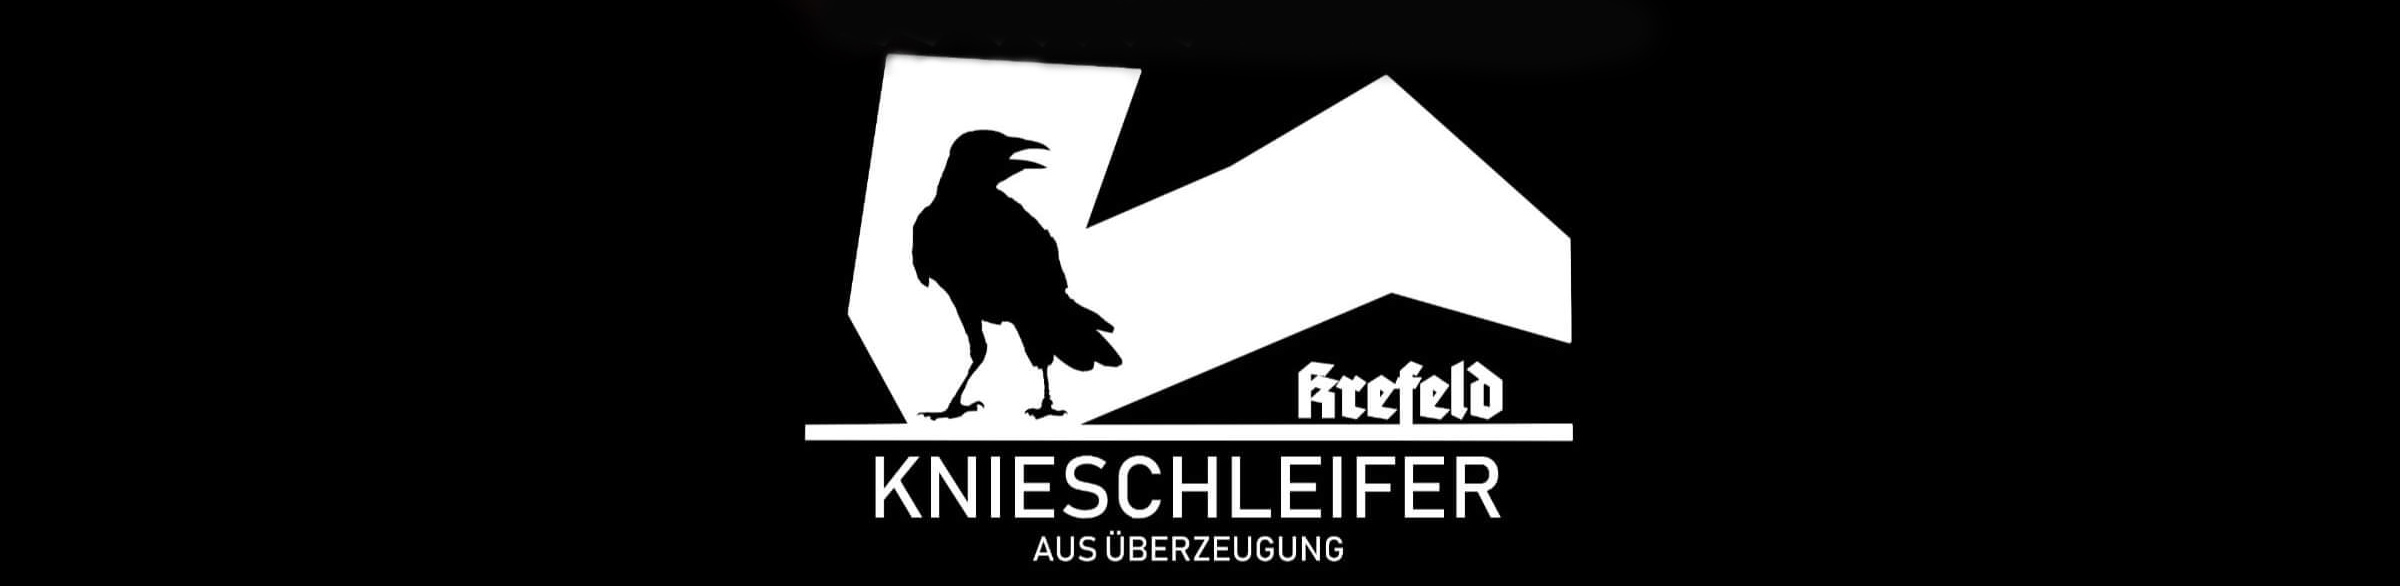 Knieschleifer aus Überzeugung Logo